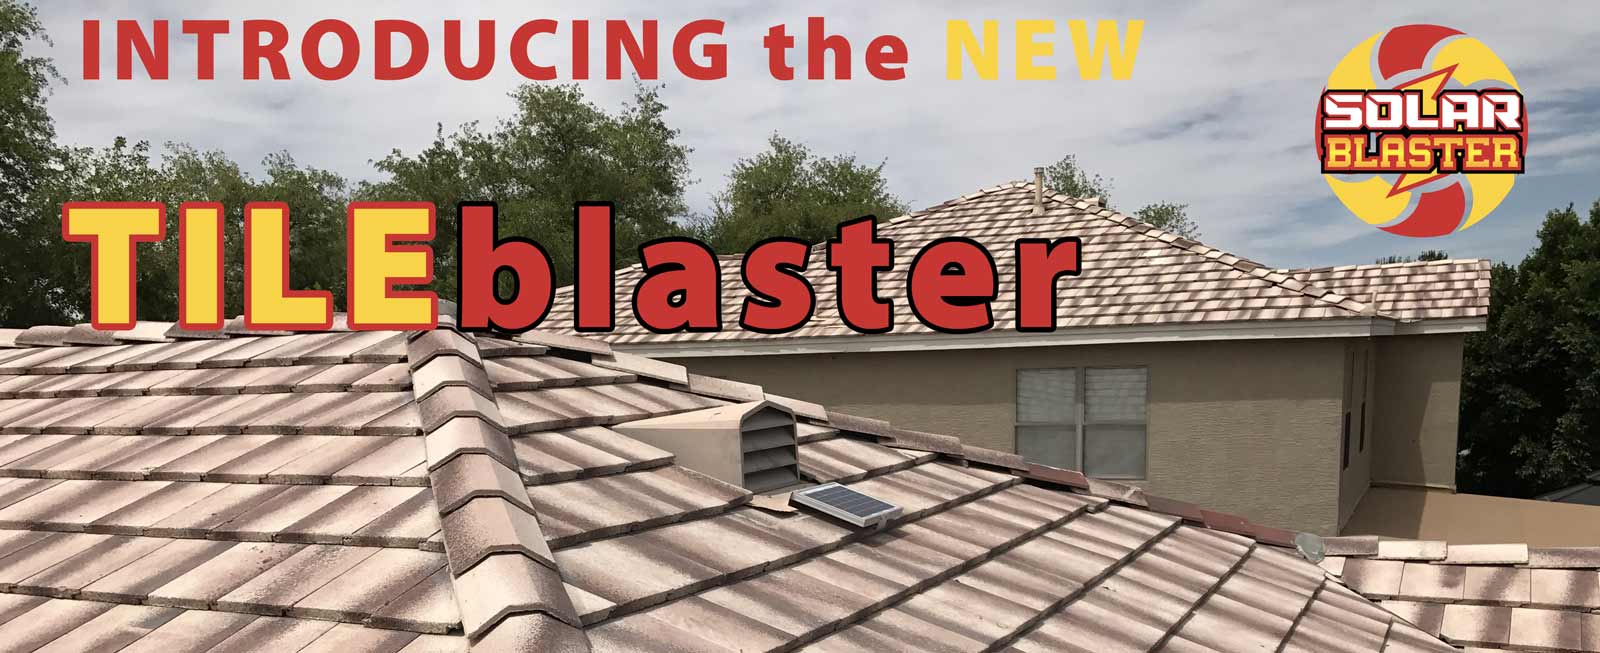 TILEblaster solar roof vent for tiled roofs